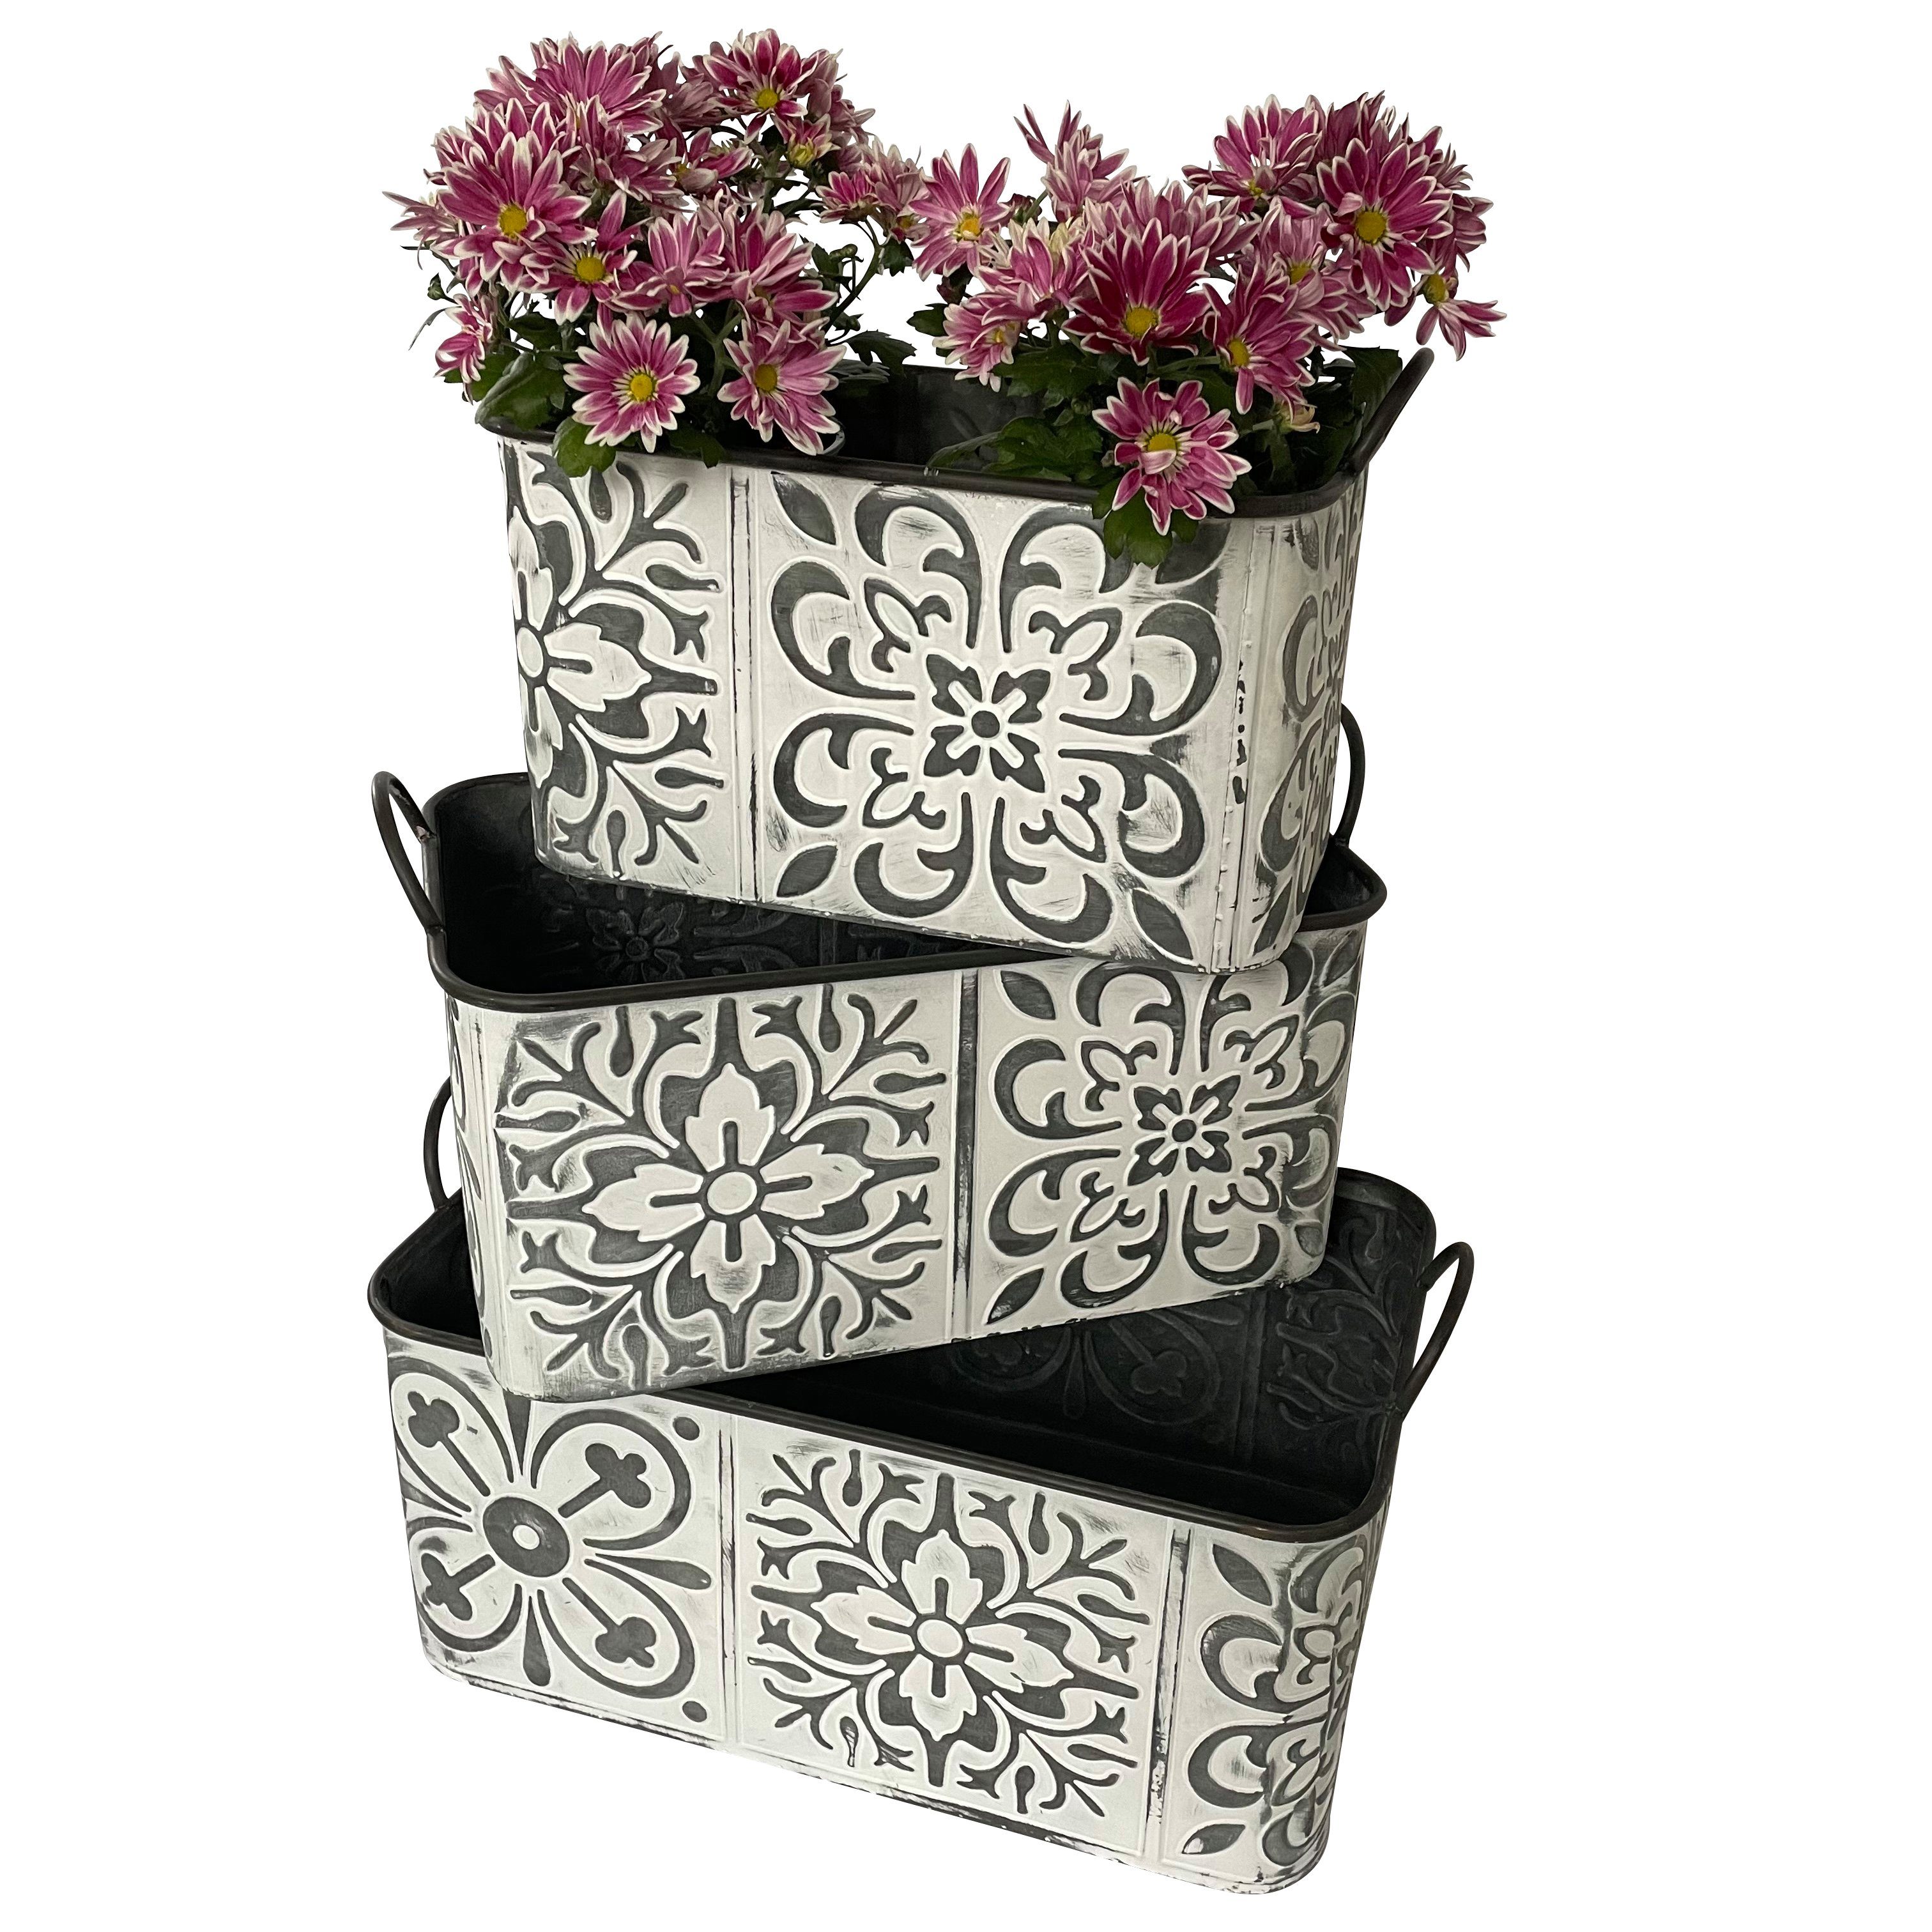 Online-Fuchs Blumentopf 3er Set Zinkwannen mit Blumenmuster groß Pflanzkübel Kasten Metall (Vintage Silber/weiß), Maße ca. 37/43/49 x 22/26/30 cm und 20/21/22 cm hoch Floralem-Design